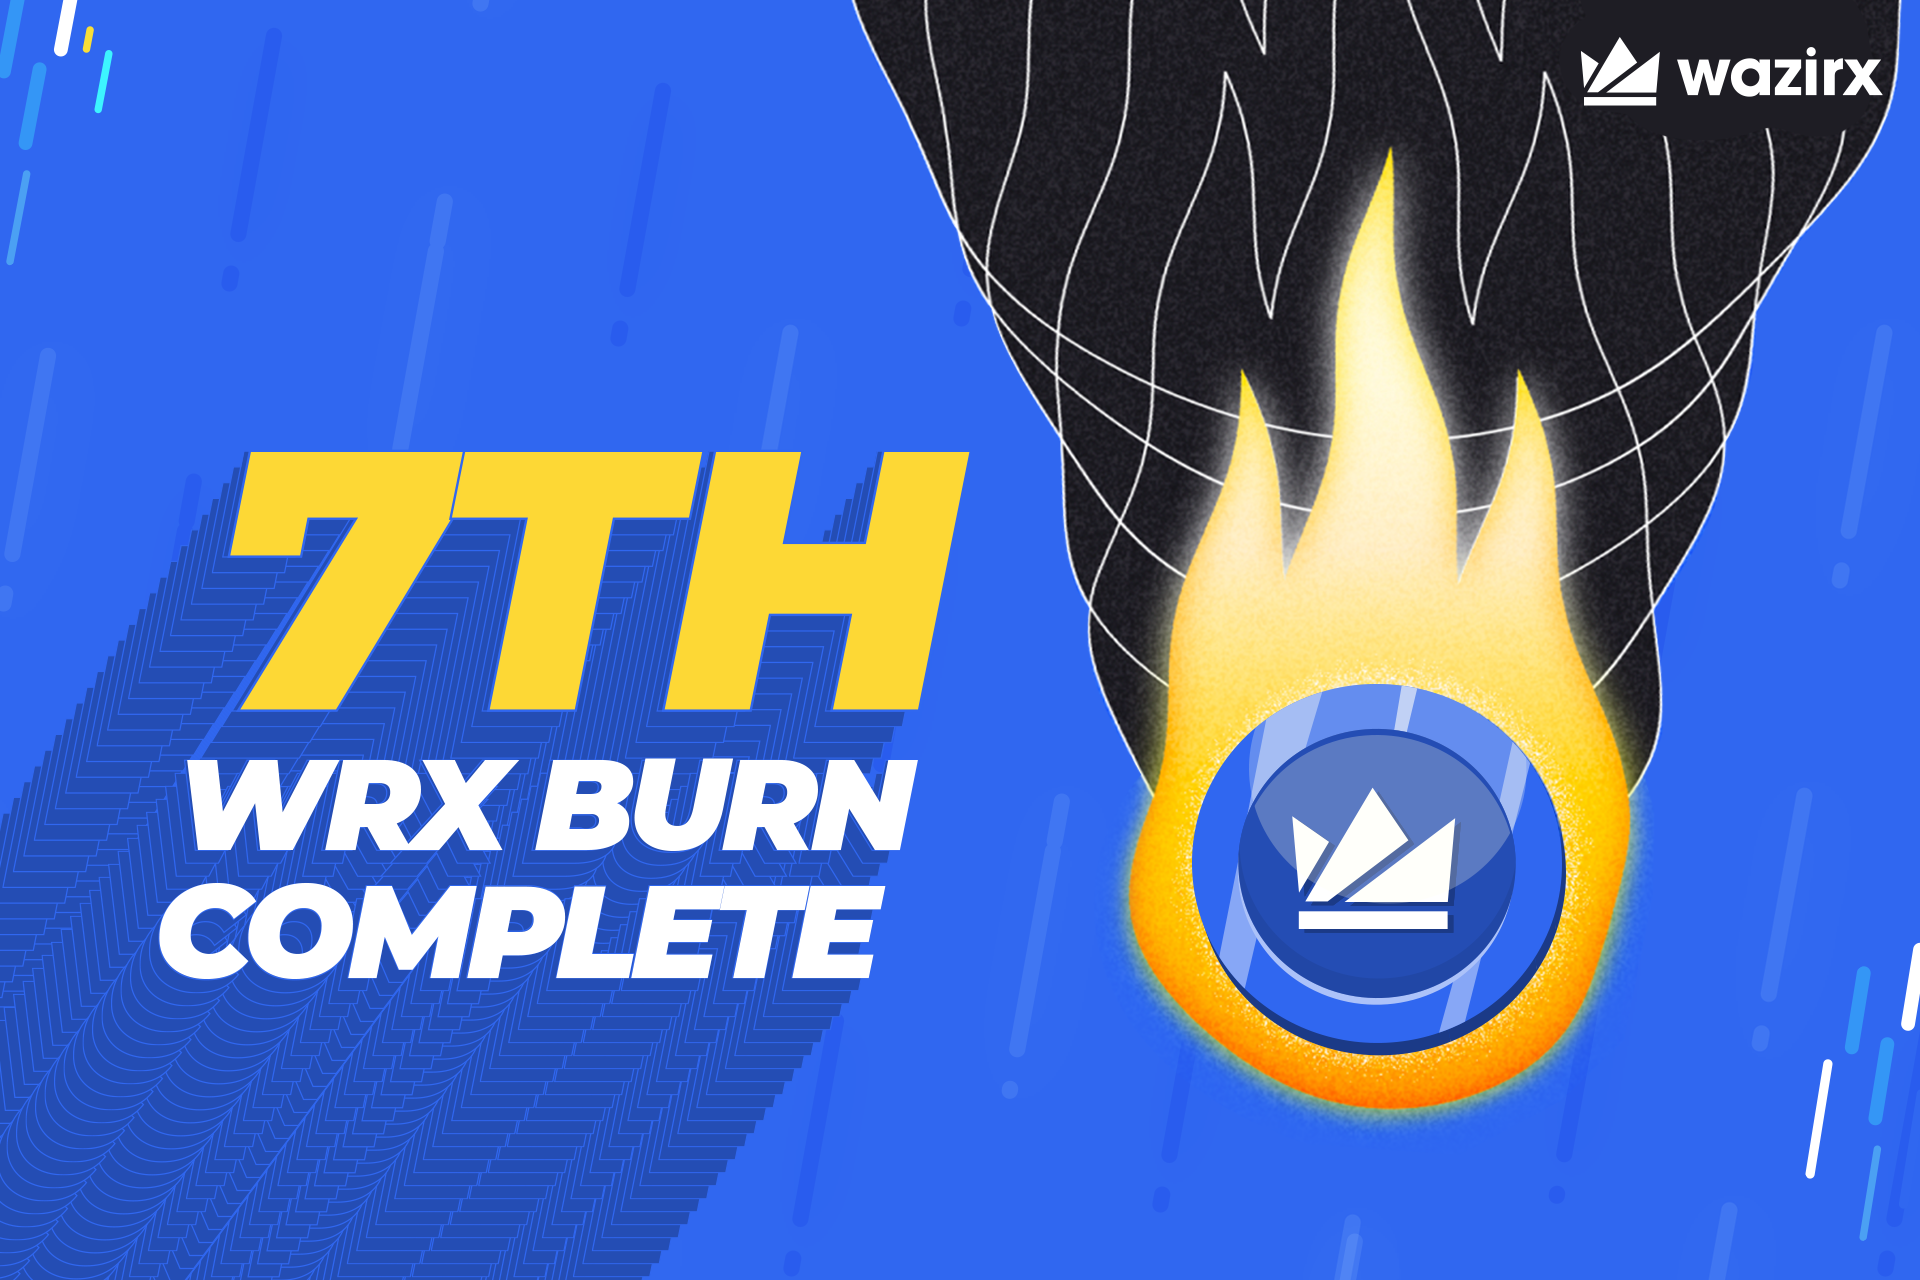 WRX Burn